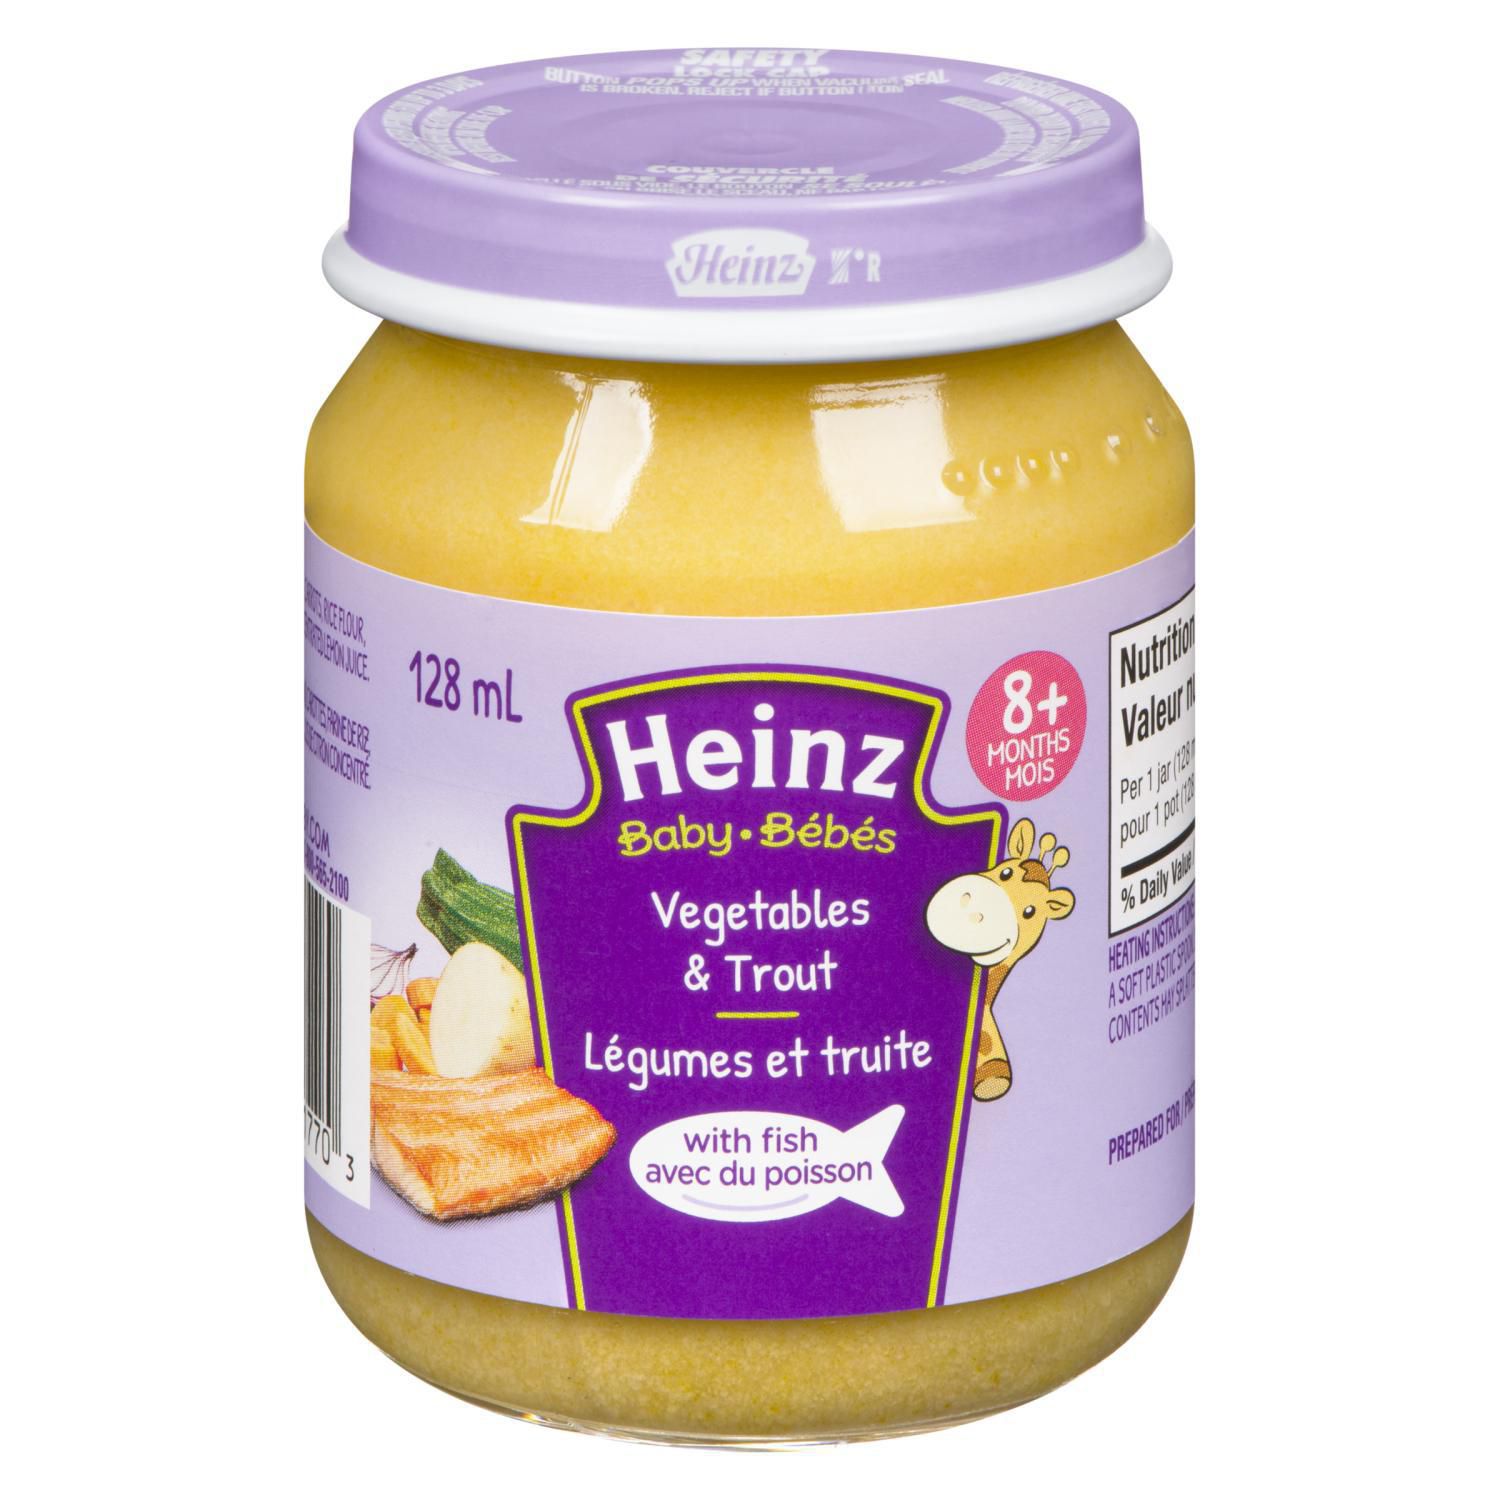 heinz baby food offers